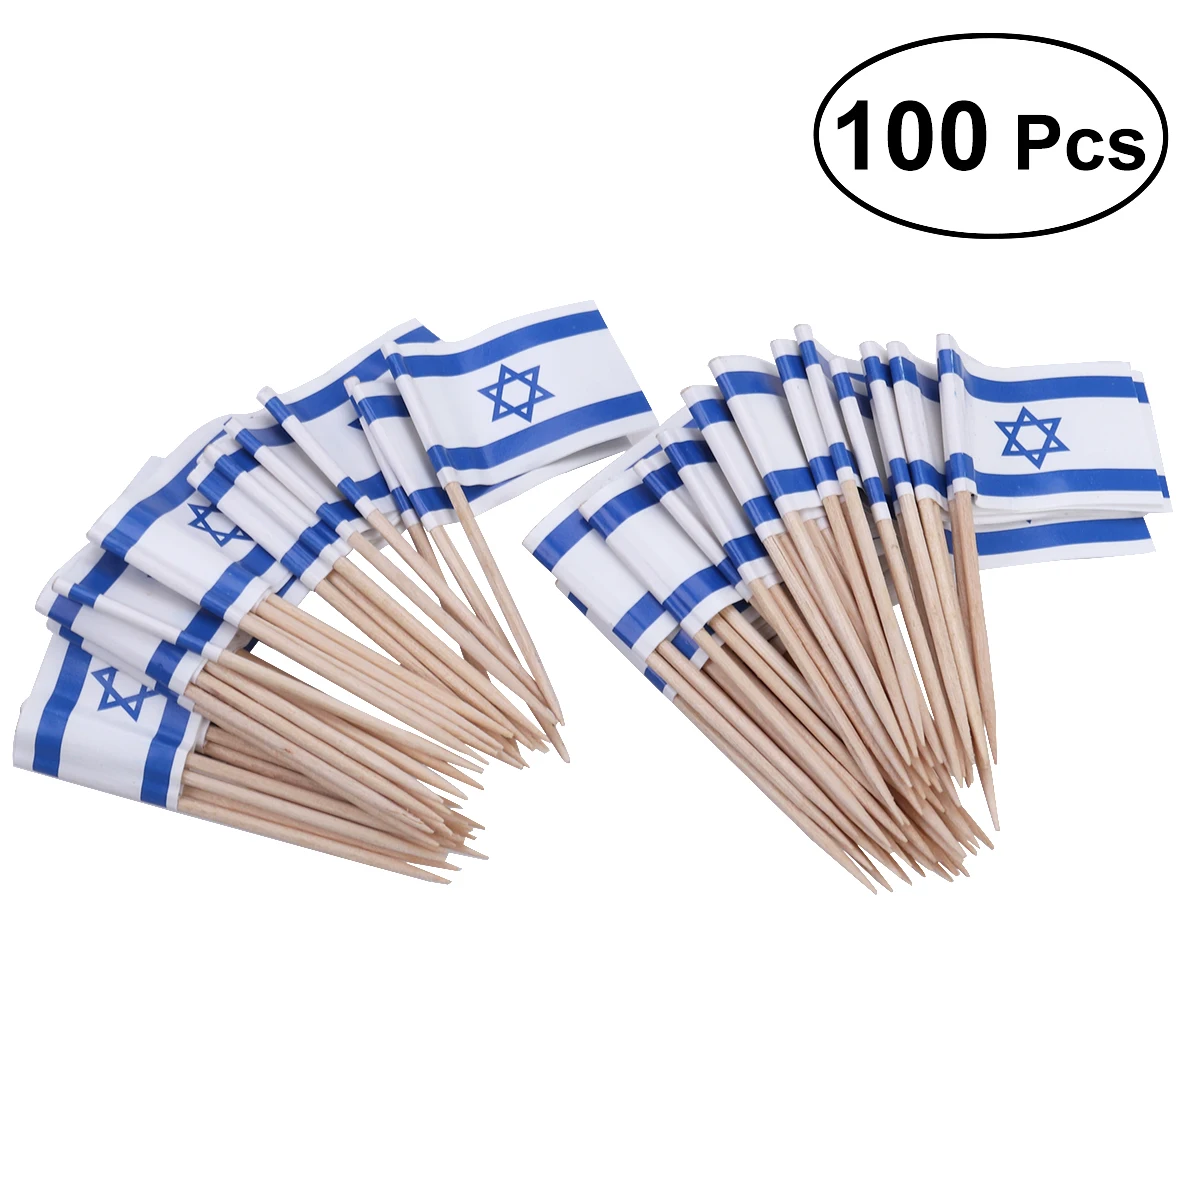 100 шт. шпажки с флагами Флаг Израиля пищевые зубочистки вечерние аксессуар 3,5x2,5x6,5 см